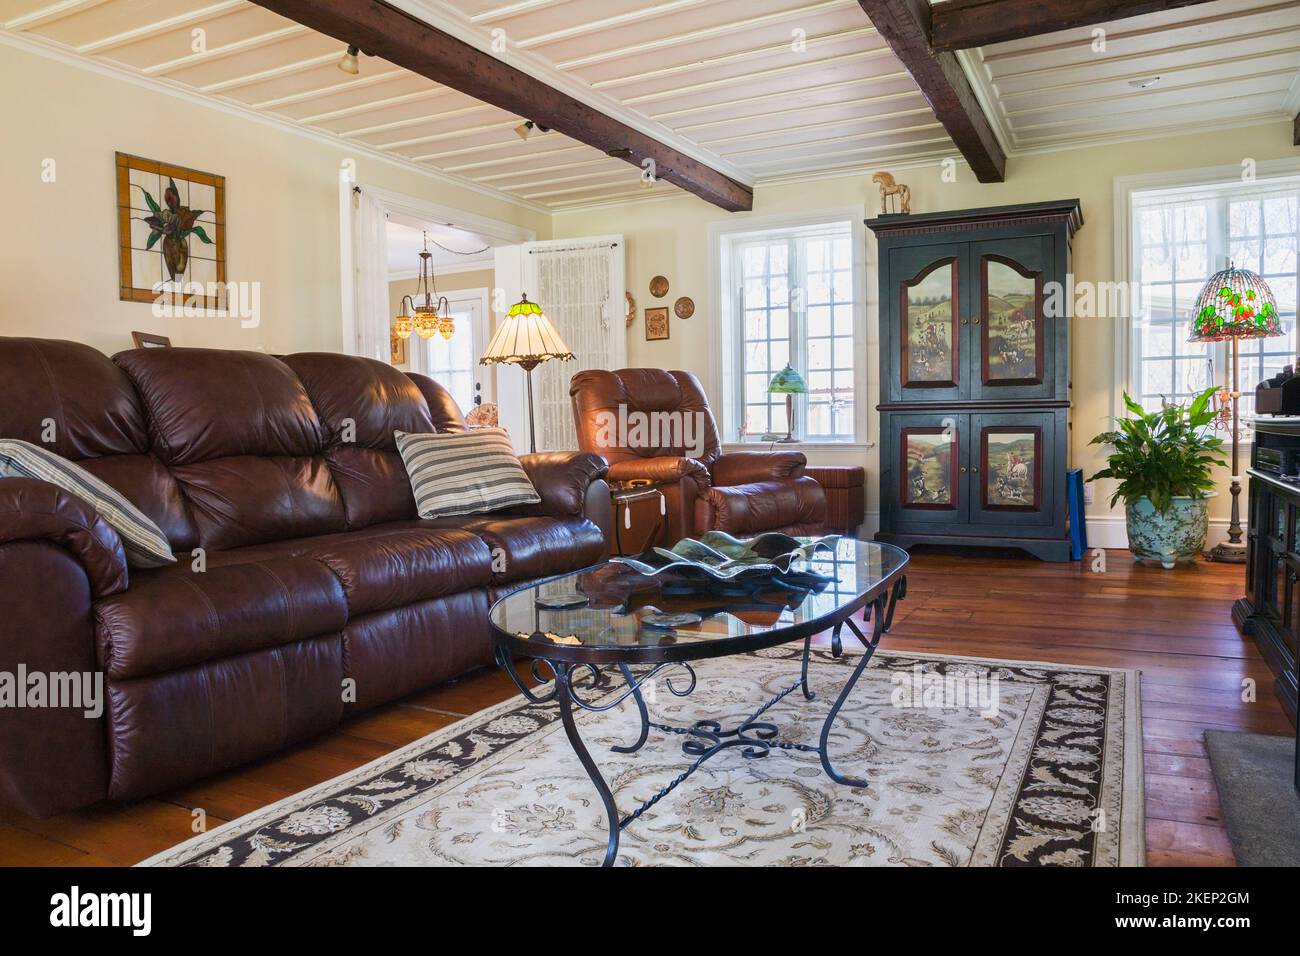 Divano in pelle marrone, poltrona e armadio in legno nel soggiorno all'interno di una vecchia casa in stile cottage canadese del 1886 ricostruita. Foto Stock